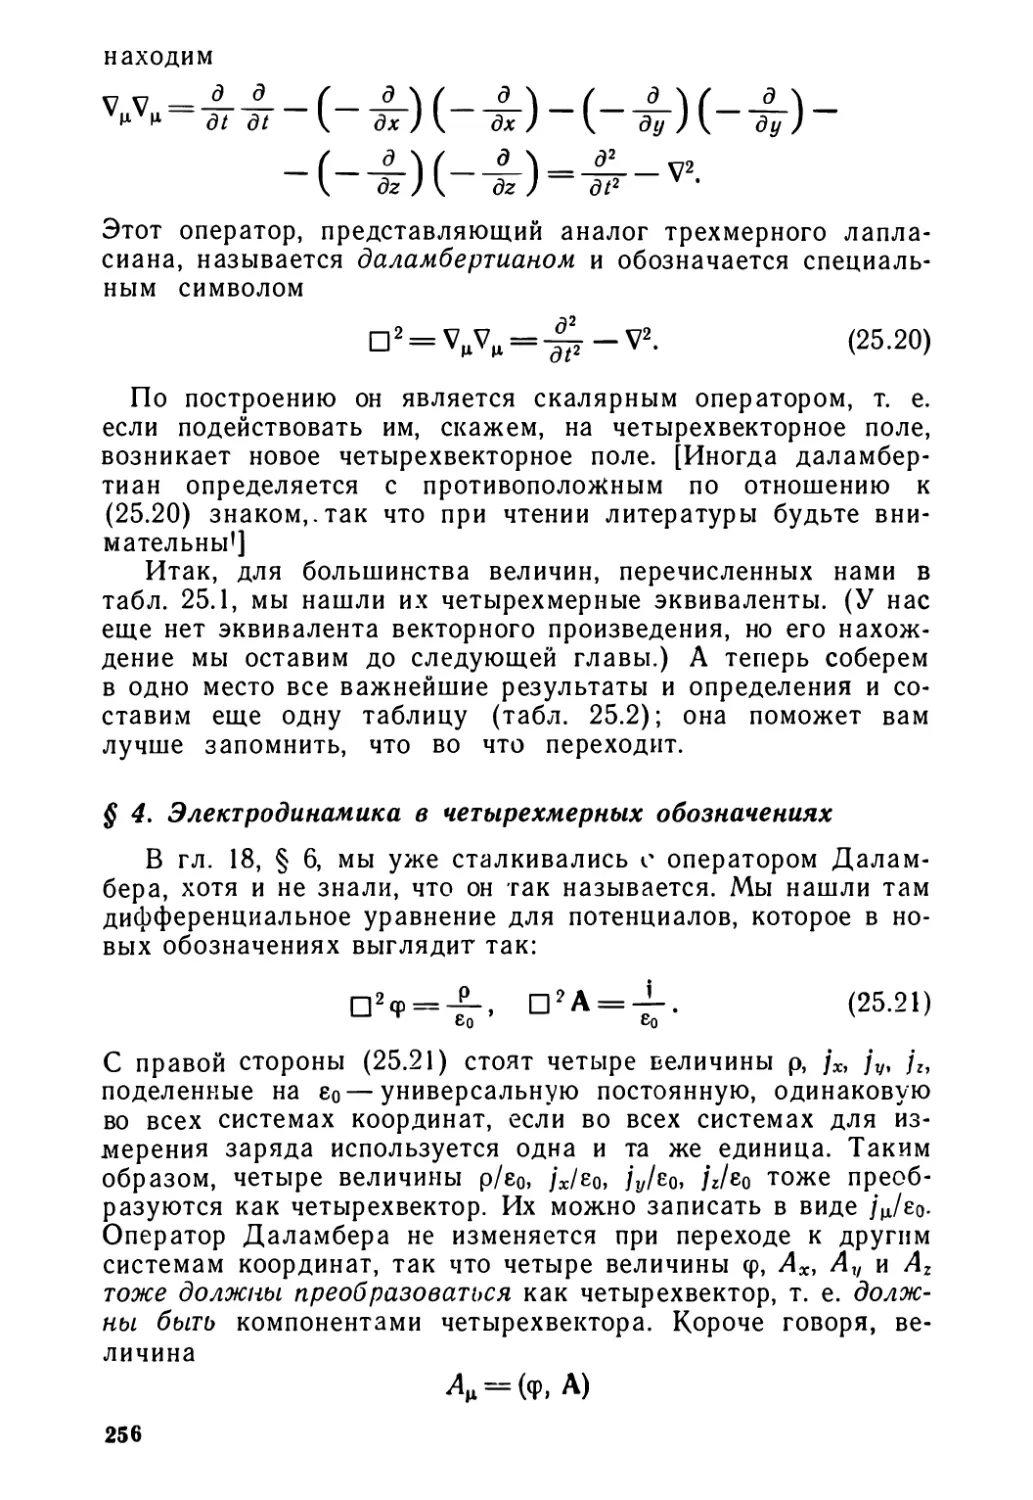 § 4. Электродинамика в четырехмерных обозначениях